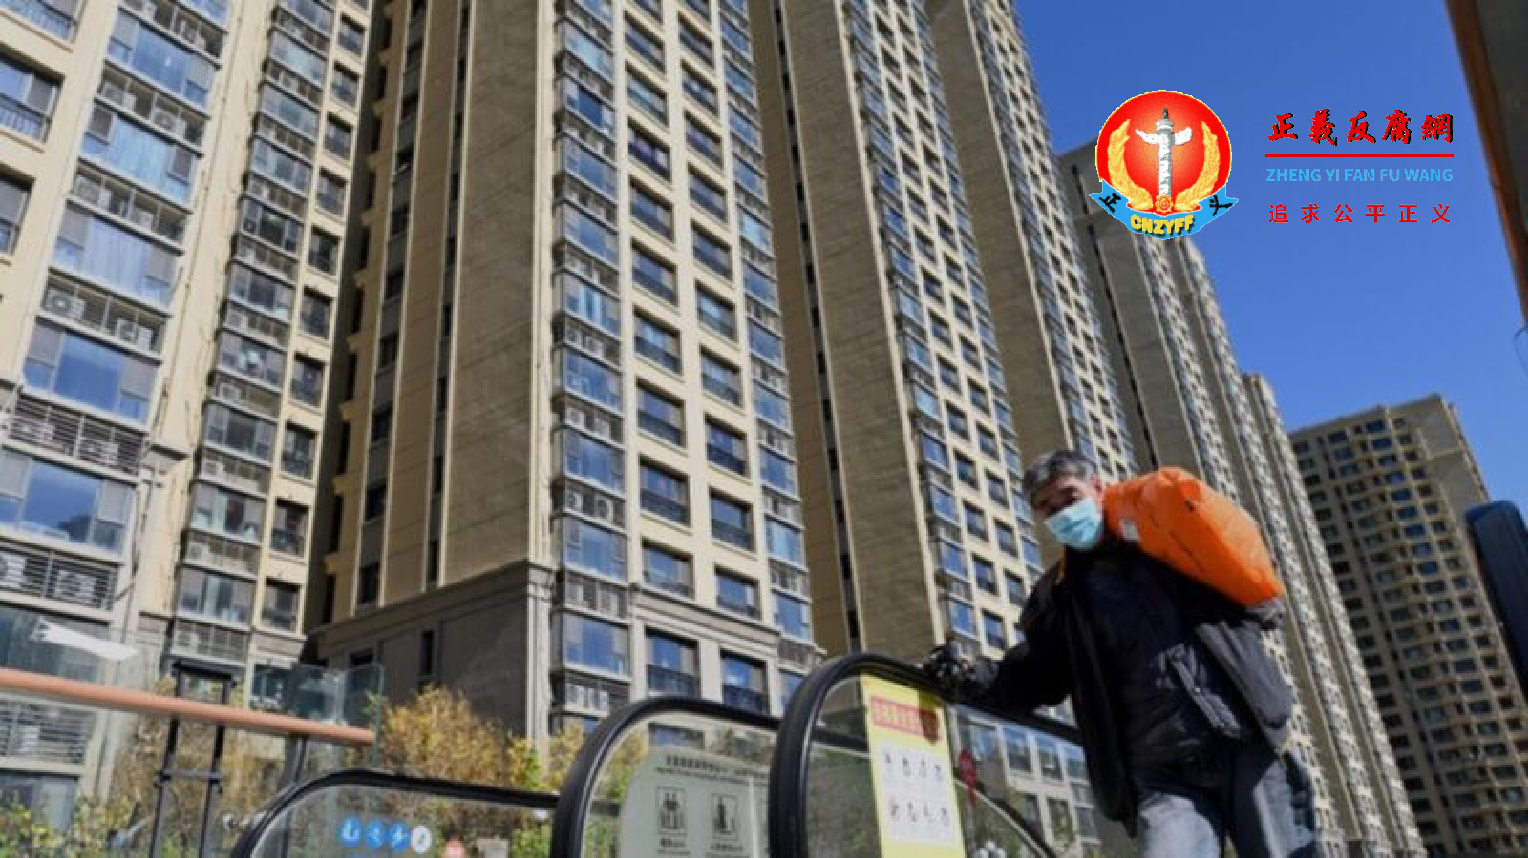 2021 年 10 月 21 日，北京市内一名男子背着行李从恒大集团开发的住宅楼前经过。.png